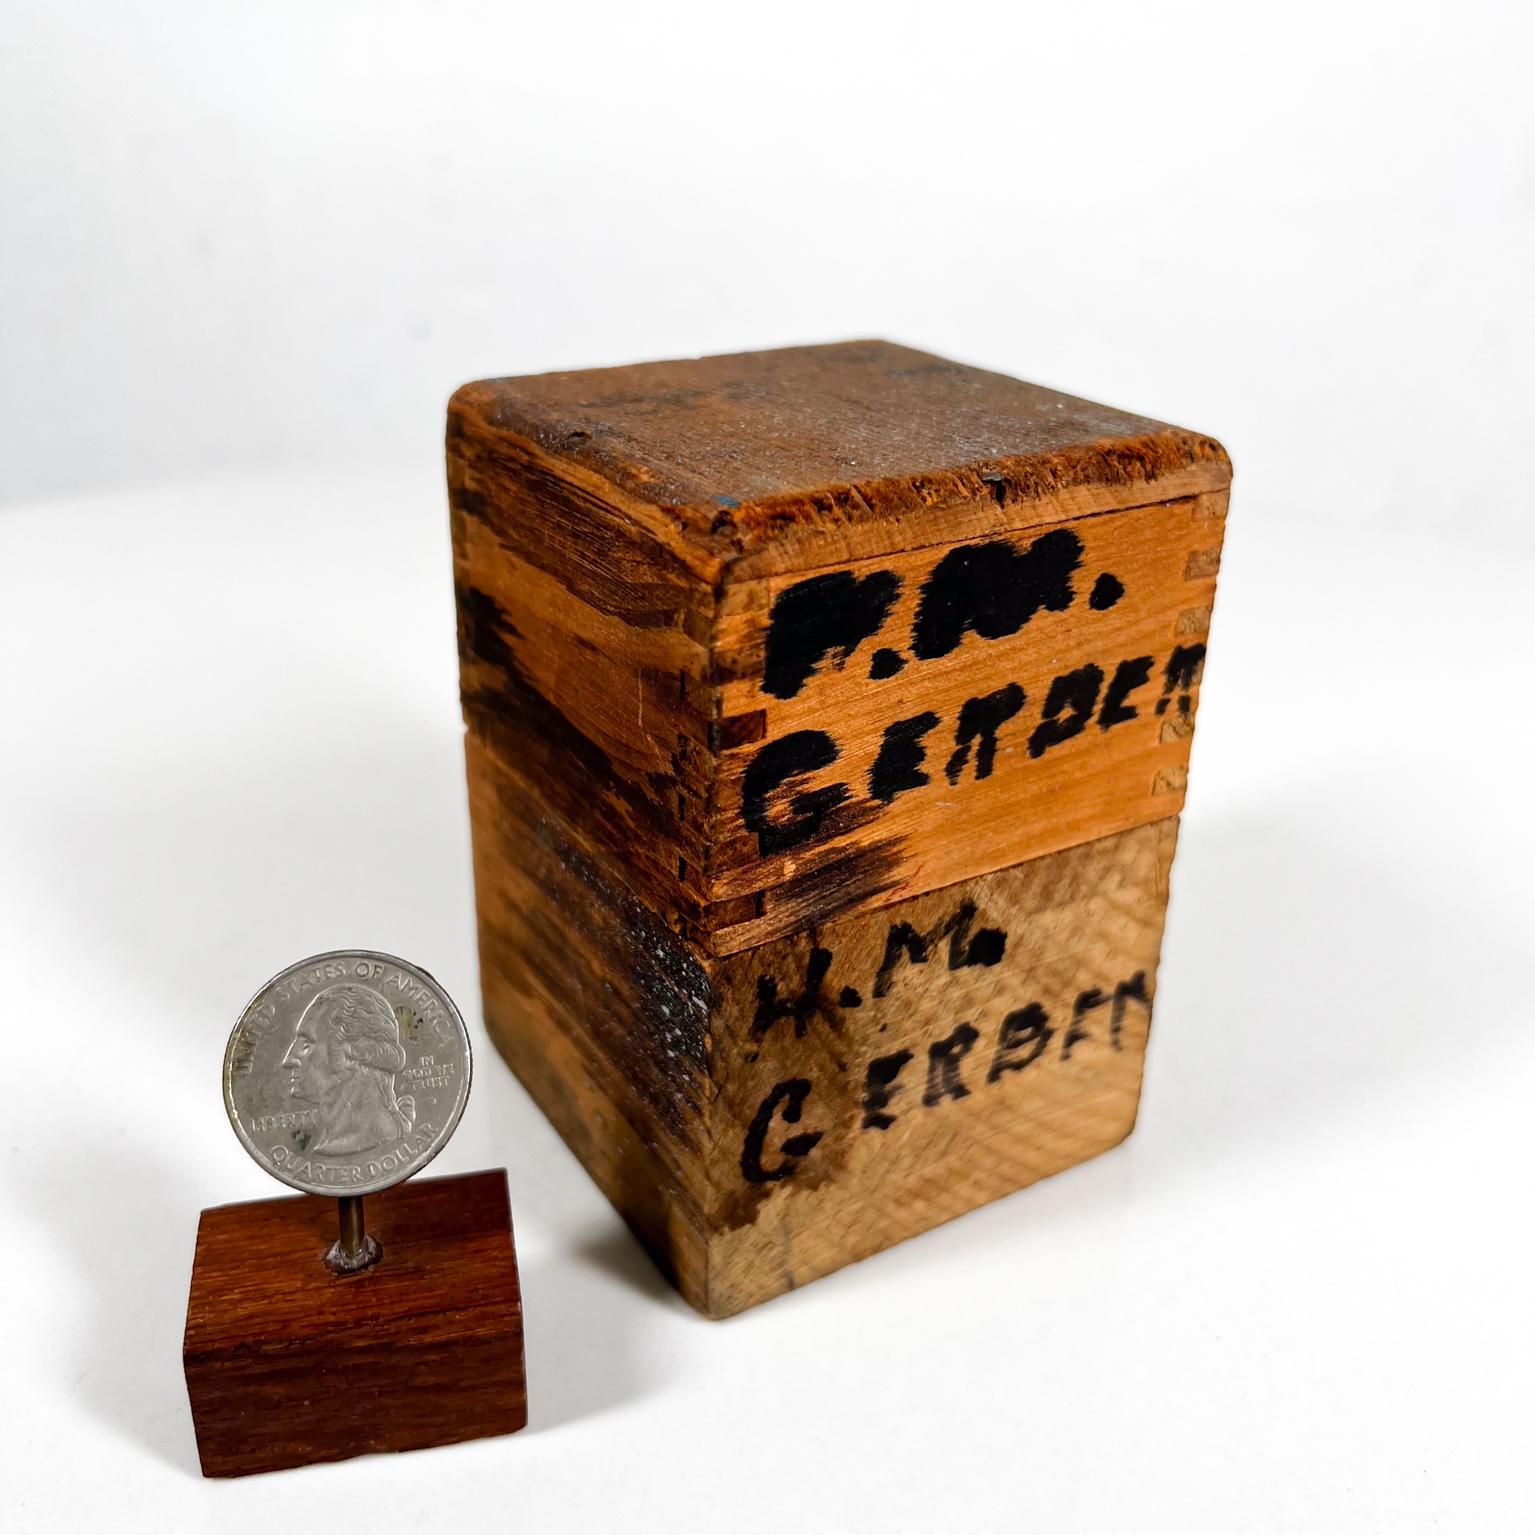 American Vintage Standard Bench Made Dies Steel Stamps Wood Box